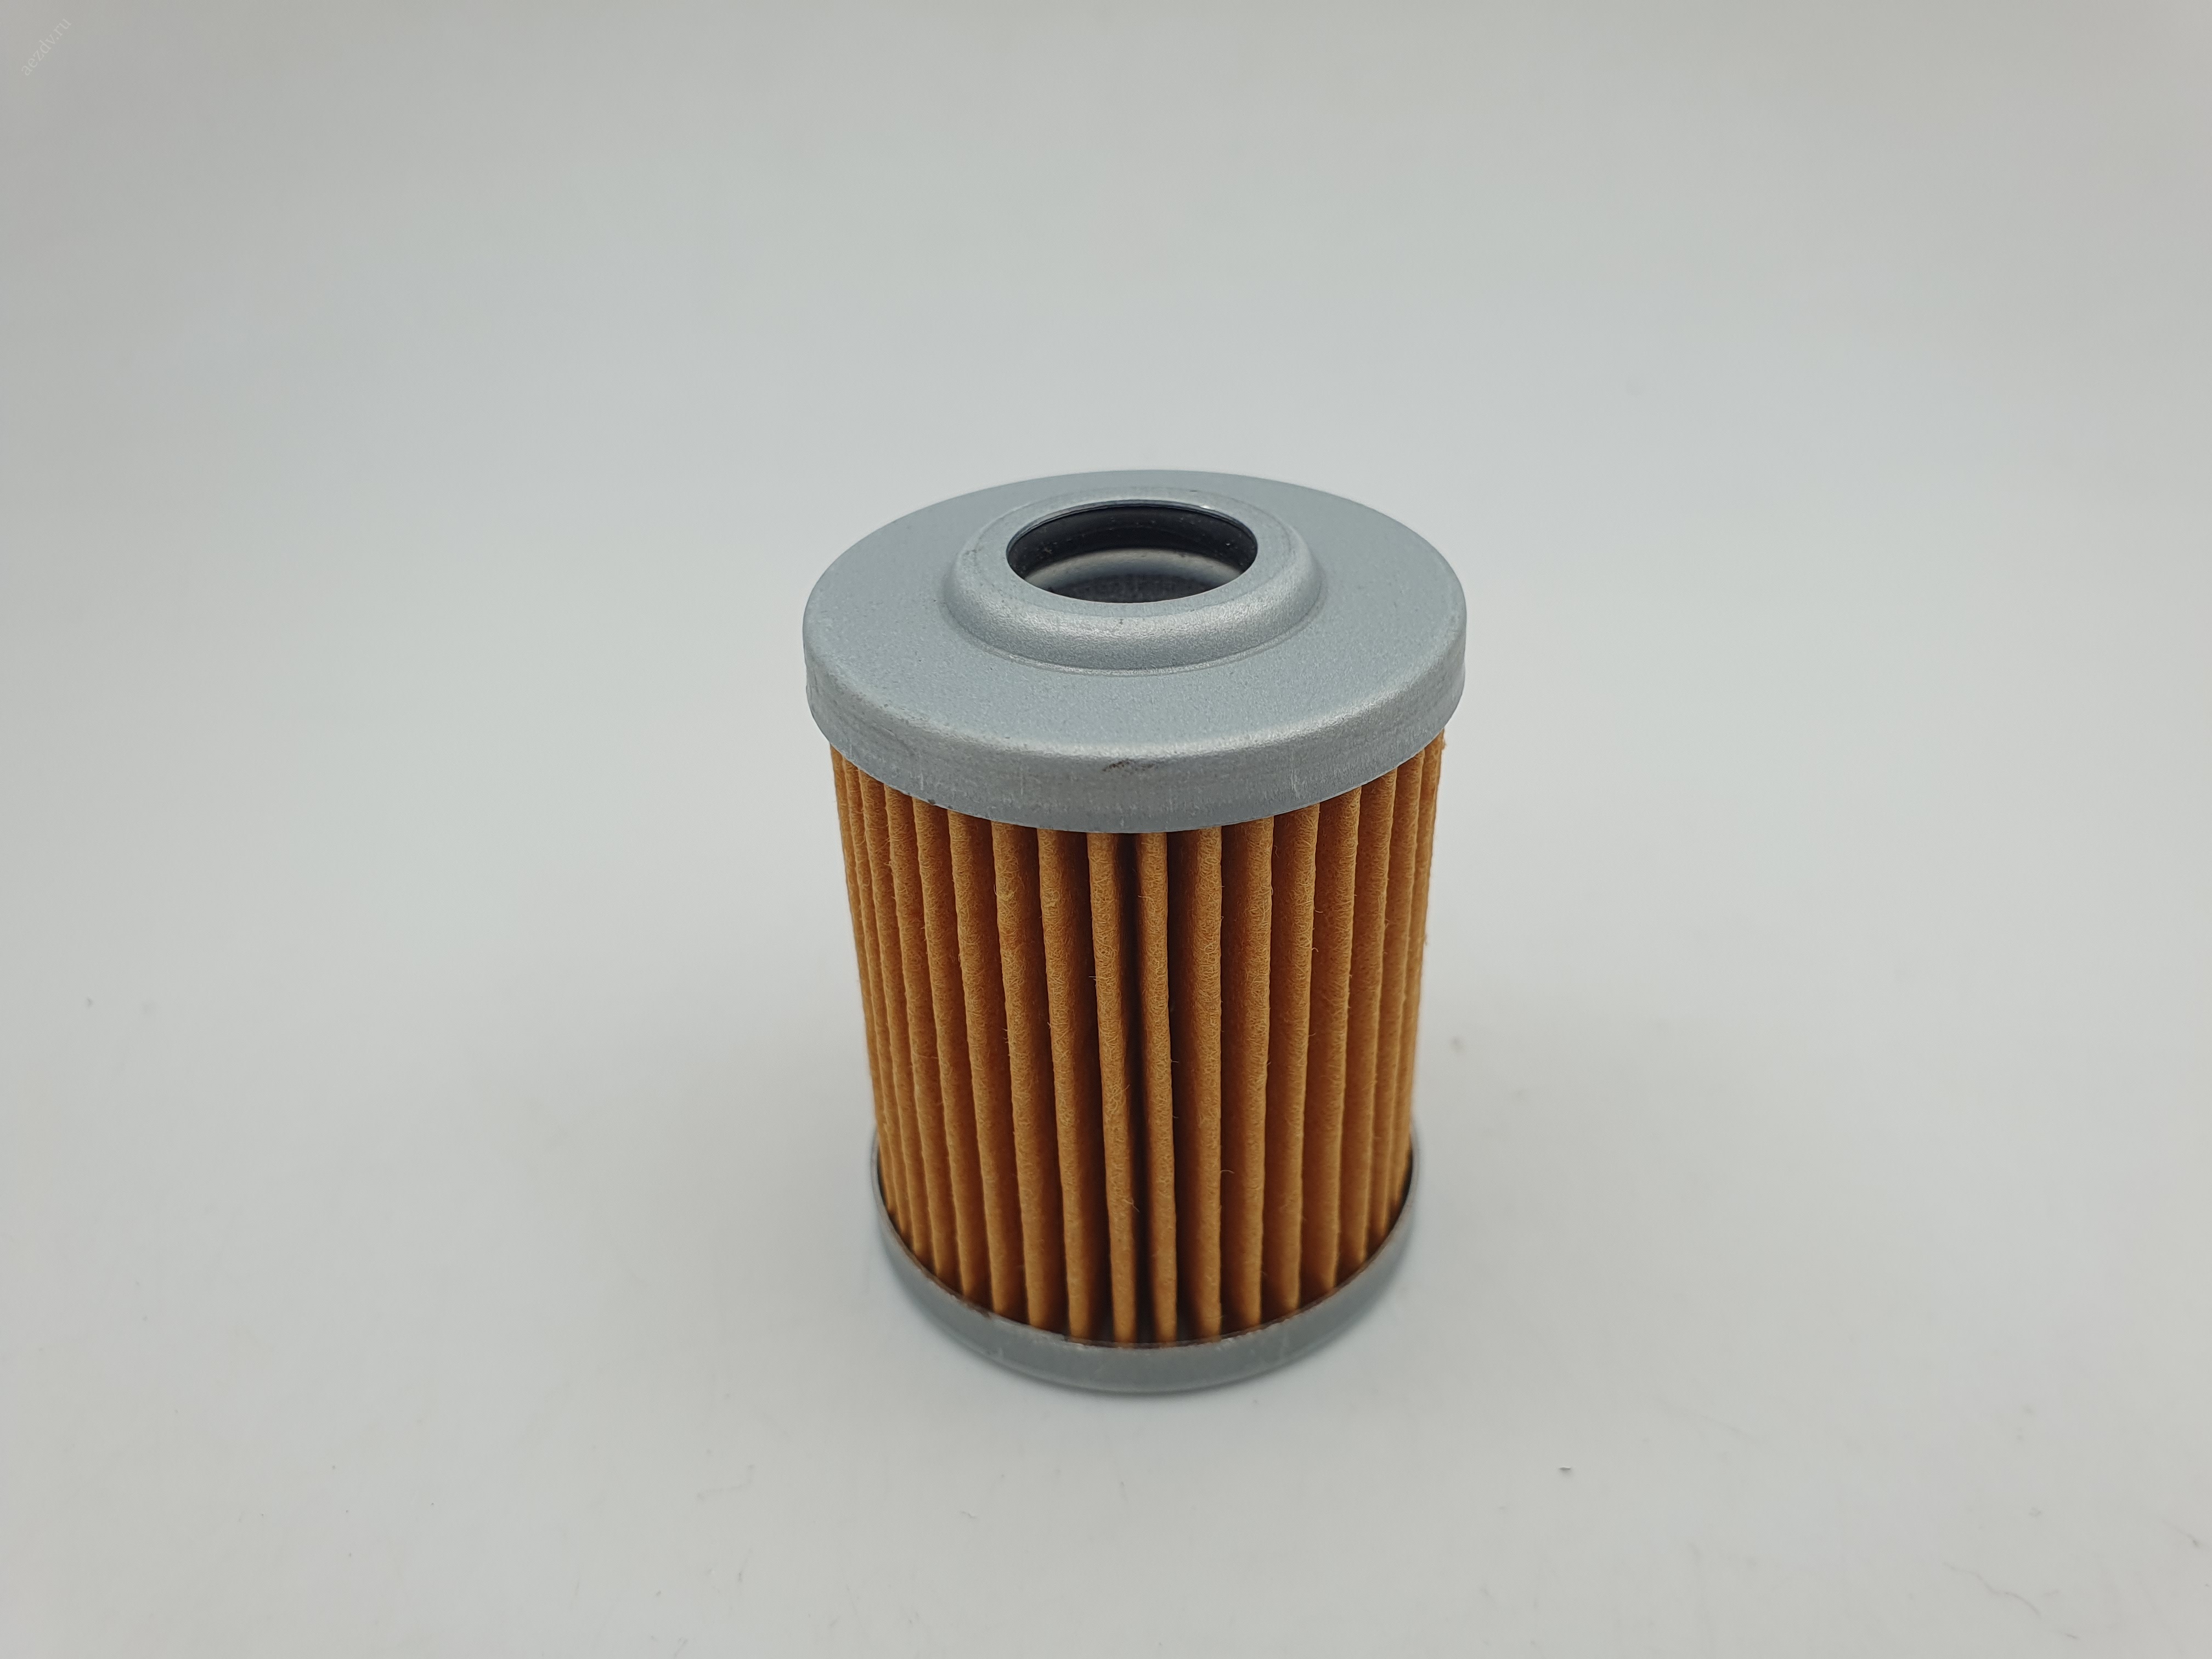 Фильтр топливный R&S DY30, 41,42 228-62110-08 (15,5 х 34 х41мм)